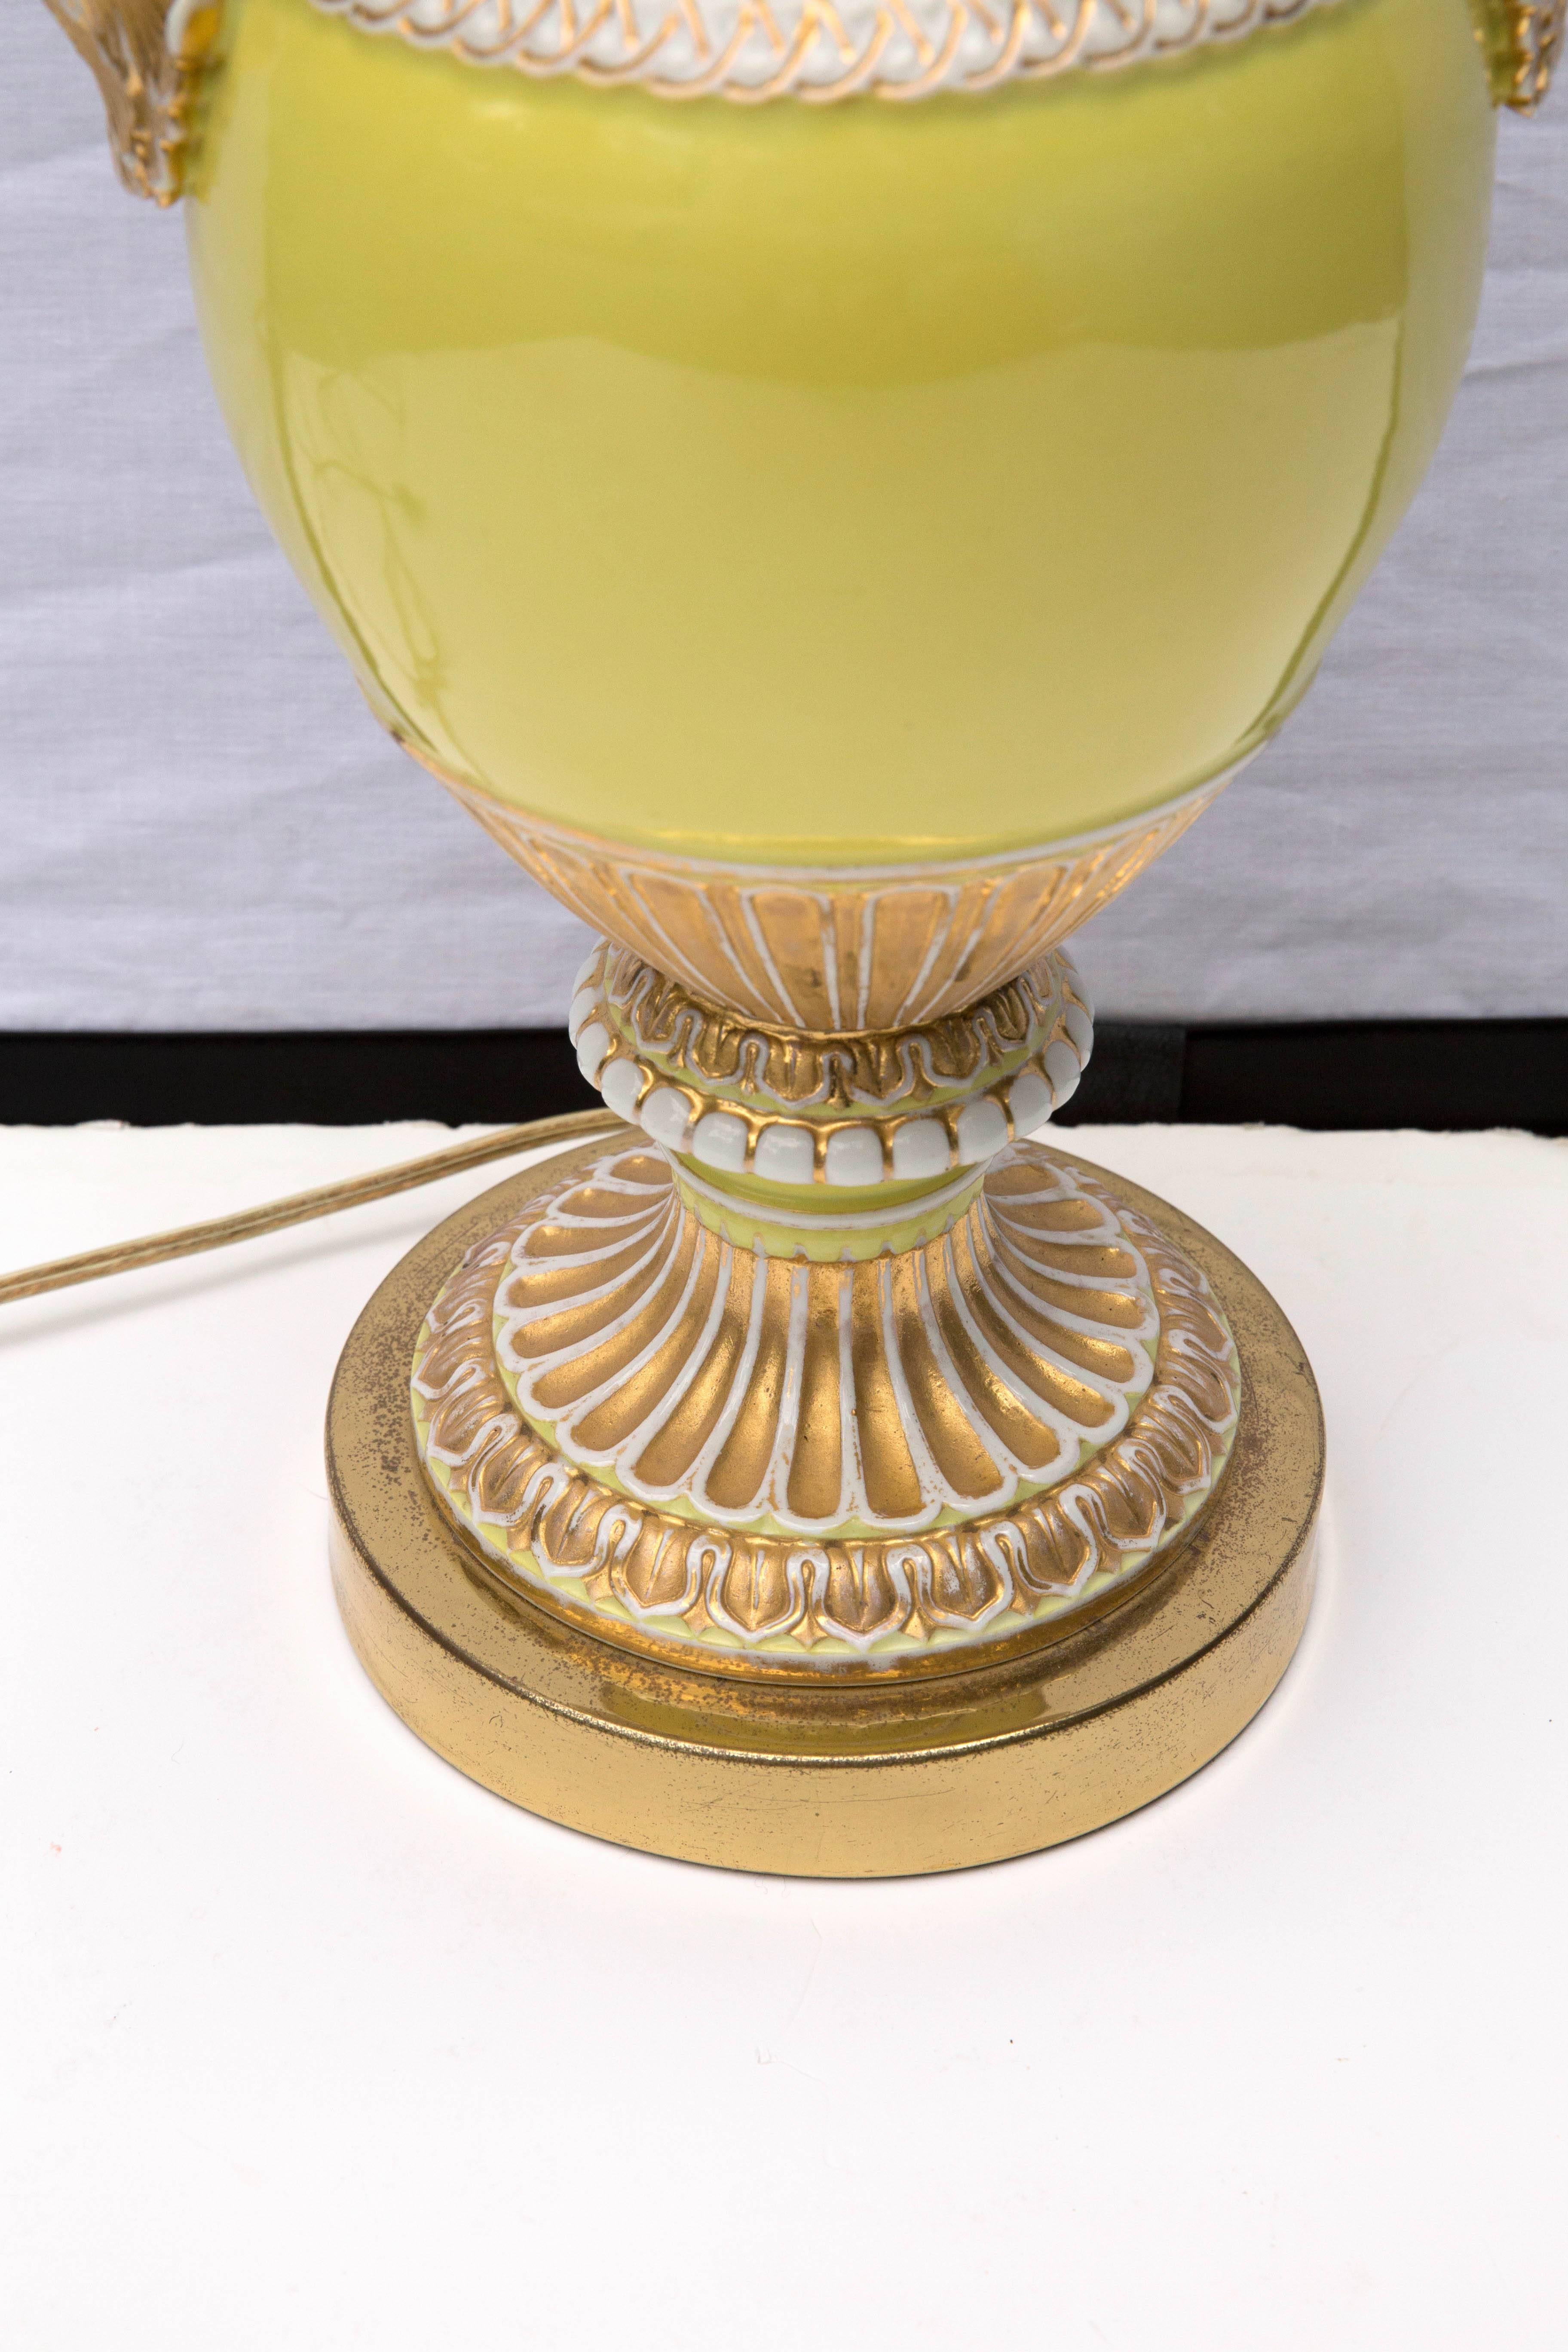 Diese Vase aus dem 19. Jahrhundert hat eine schöne gelbe Farbe mit vergoldeten Highlights und gewundenen weißen Schlangen als Henkel. Als Tischlampe wurde die Vase mit einer Kappe versehen und auf einen Sockel gestellt.